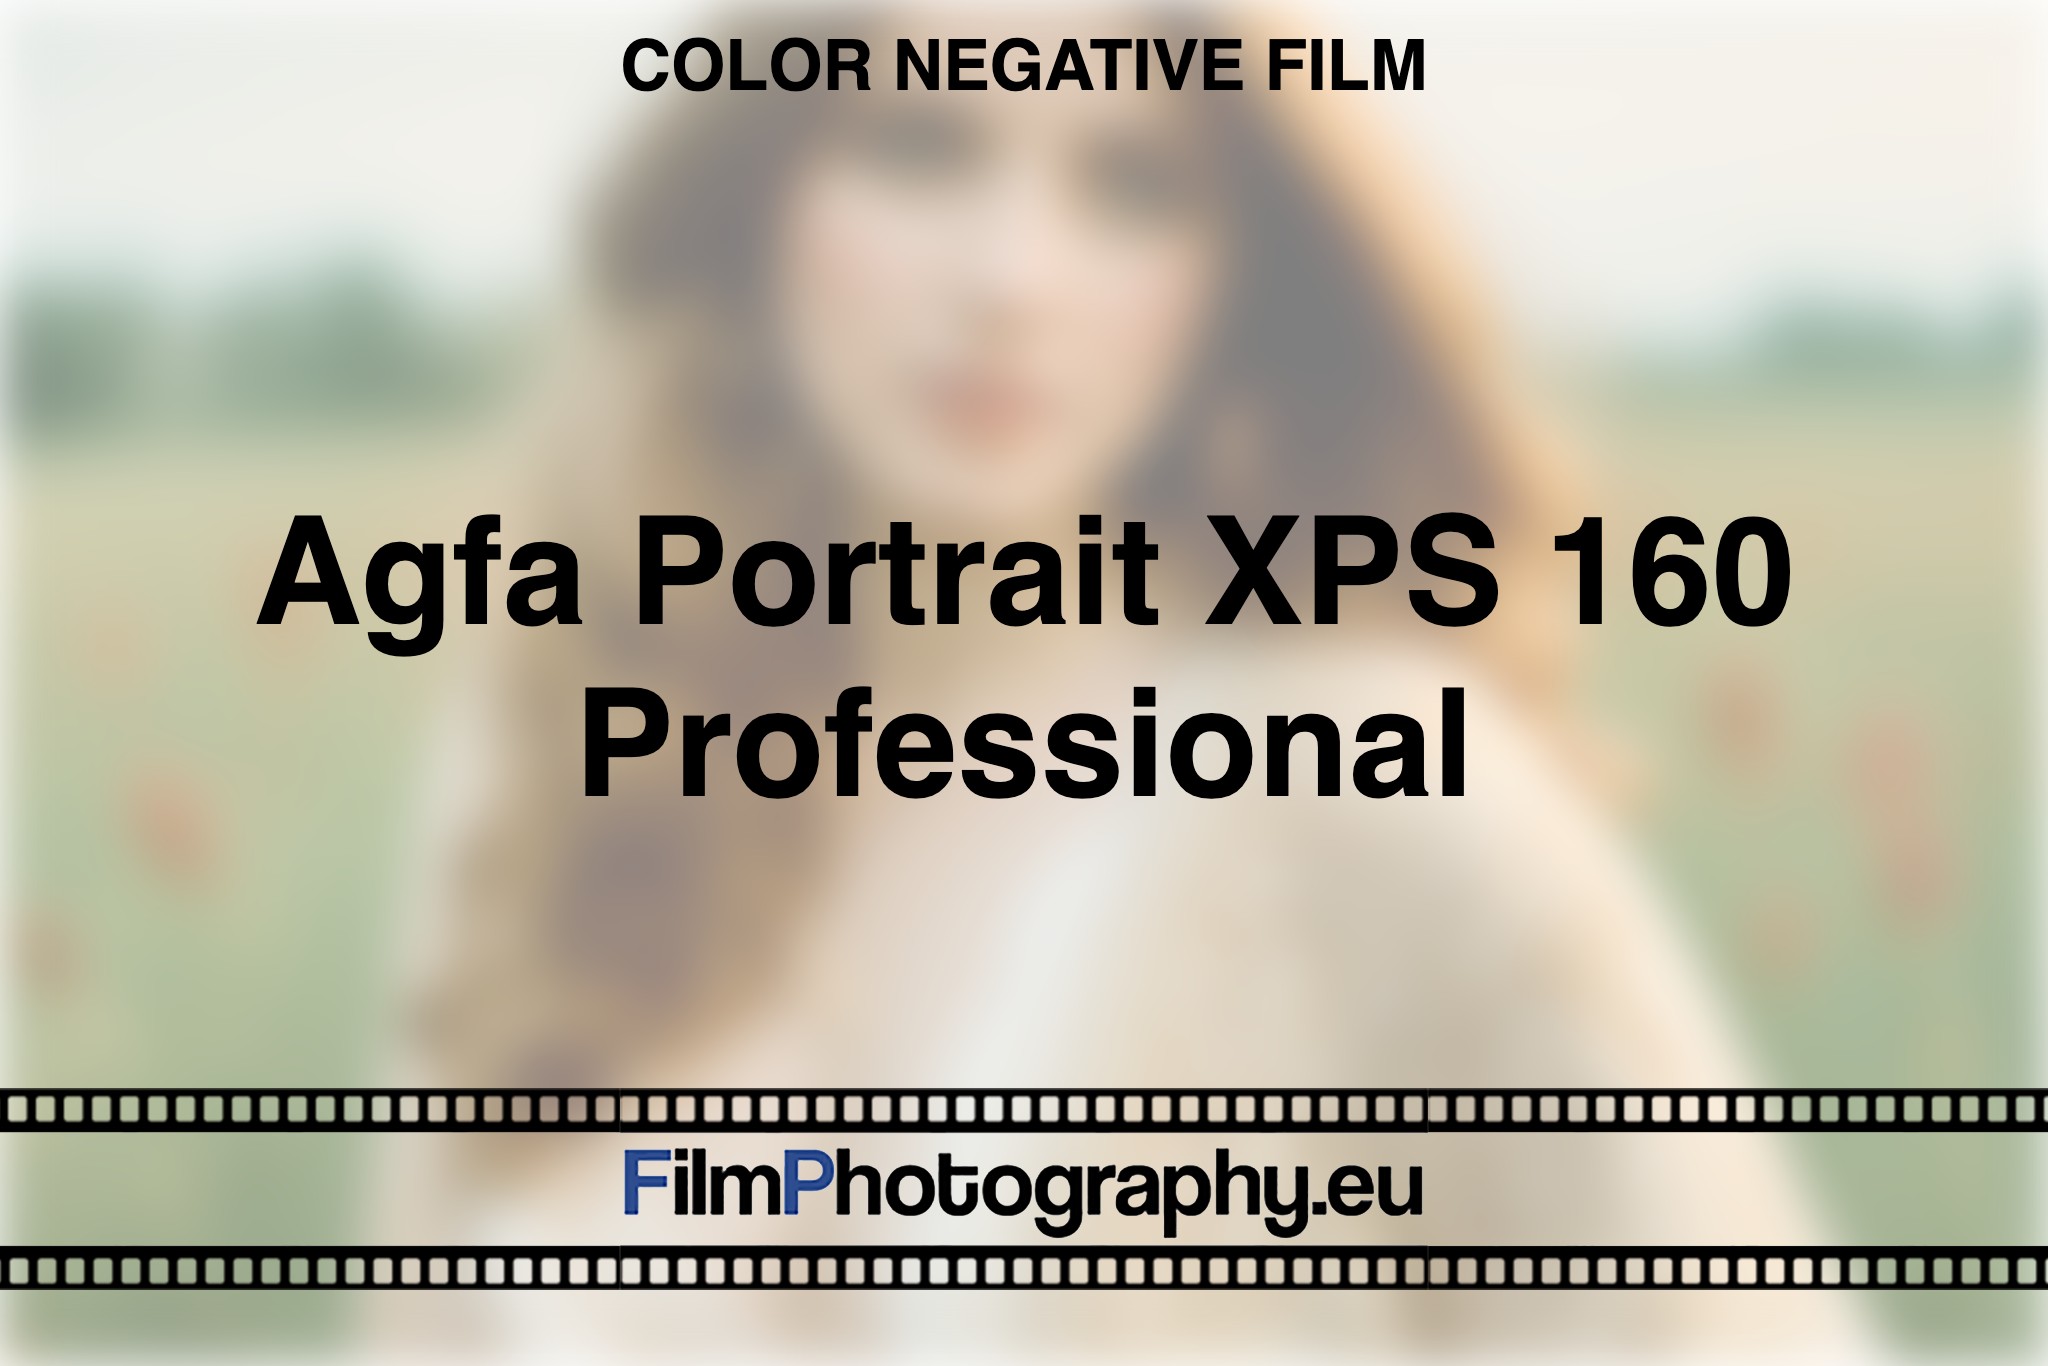 agfa-portrait-xps-160-professional-color-negative-film-bnv